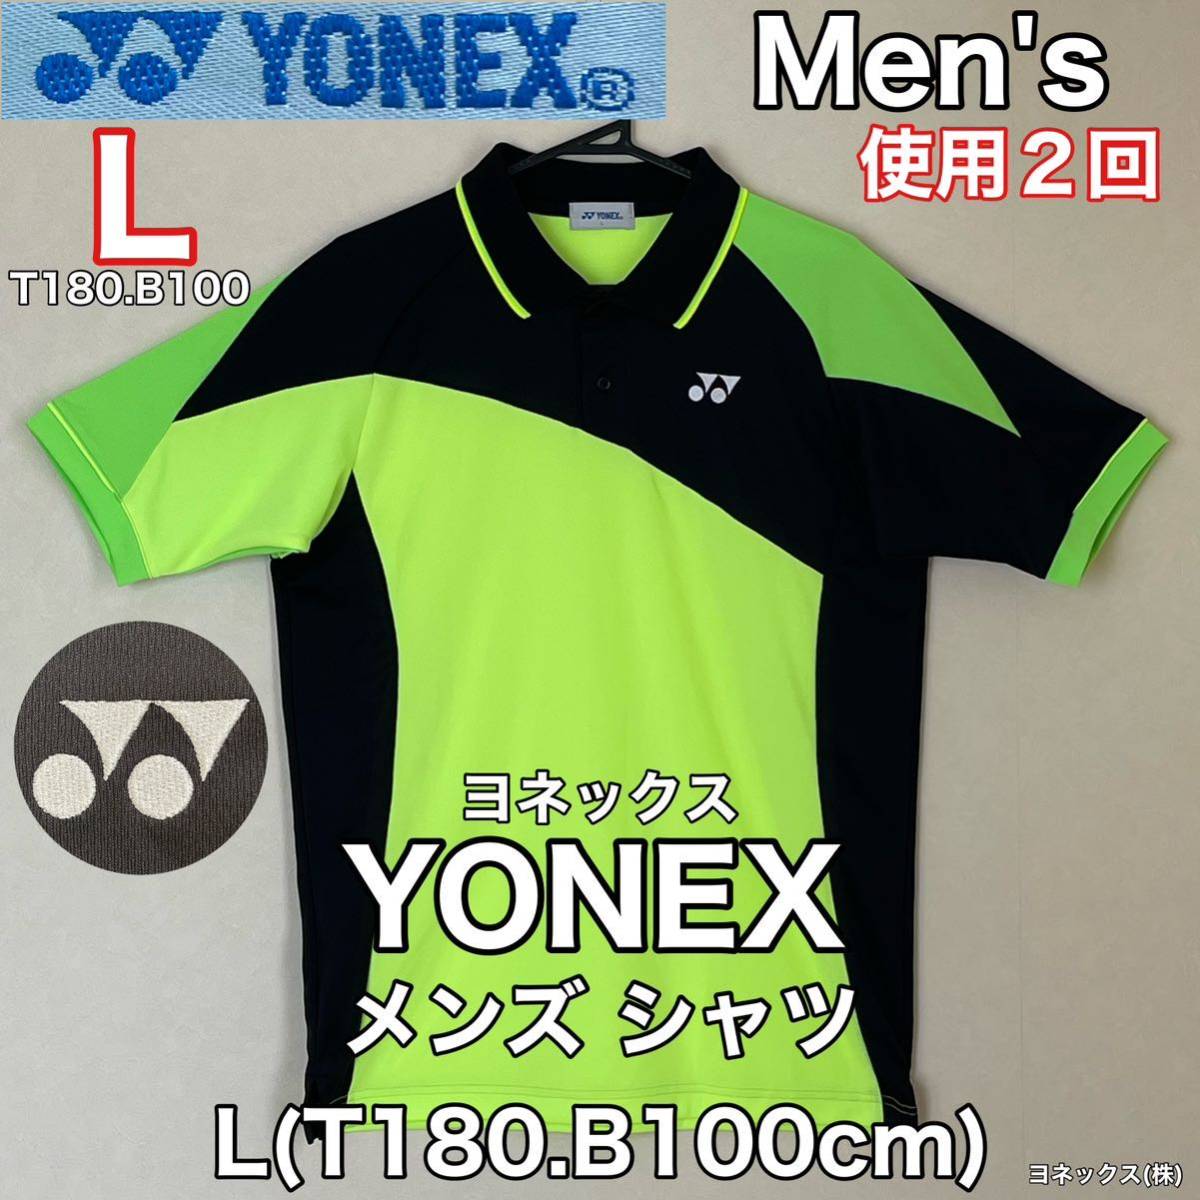 超美品 YONEX(ヨネックス)メンズ シャツL(T180.B100cm)ブラック グリーン 使用2回 半袖 ドライ ゴルフ テニス スポーツ アウトドア_画像1